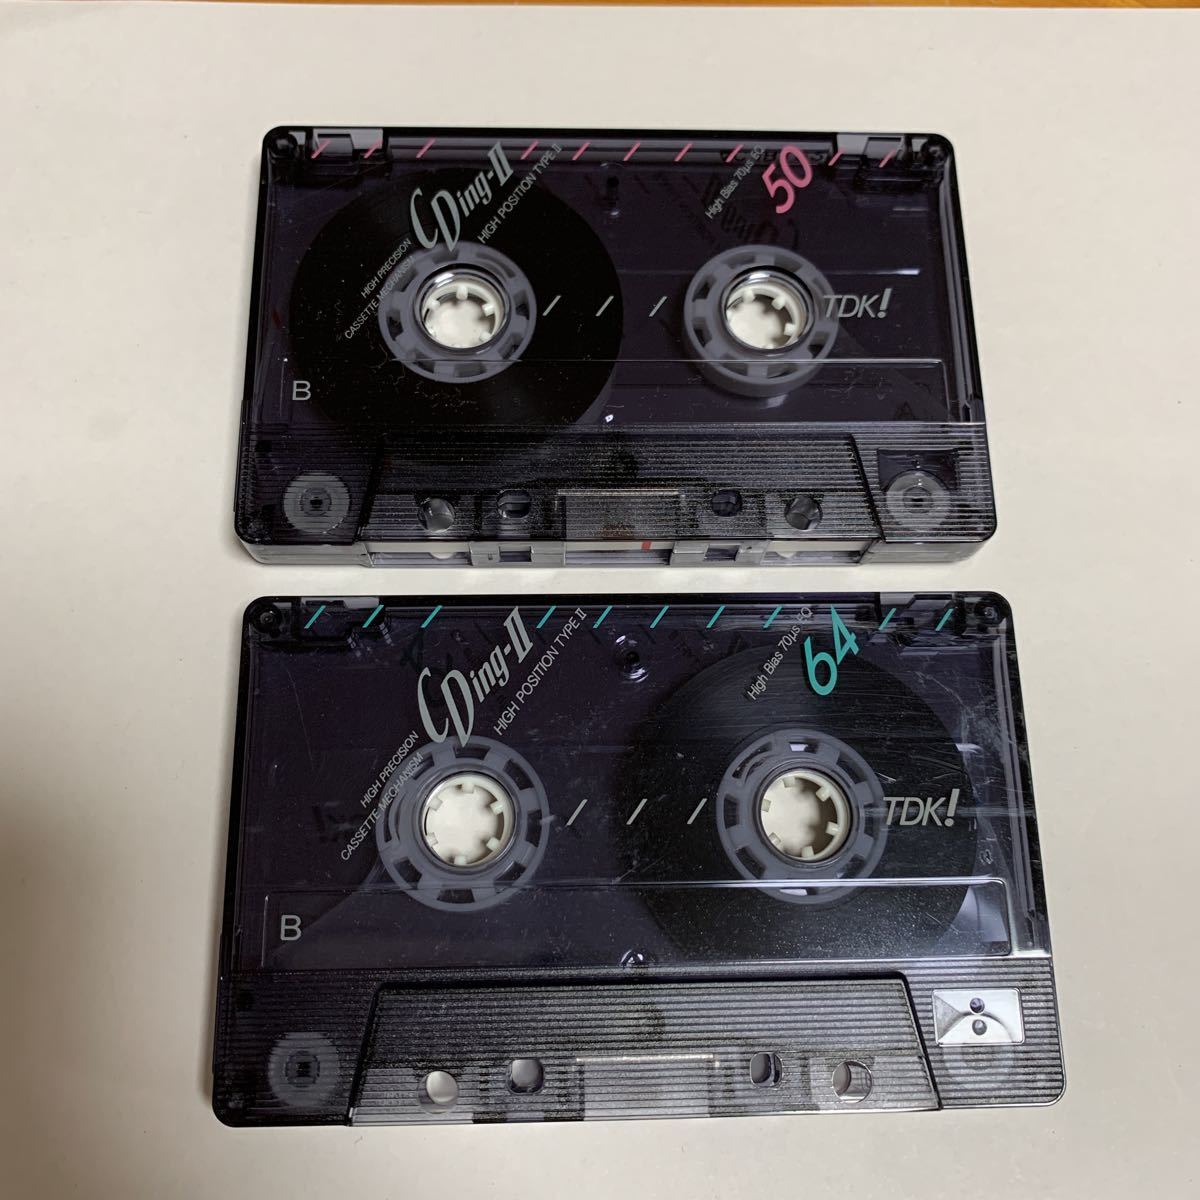 5. カセットテープ TDK CDing-II 50分 64分 2本セット ハイポジション 録音済か不明 中古品 美品 送料無料_画像2